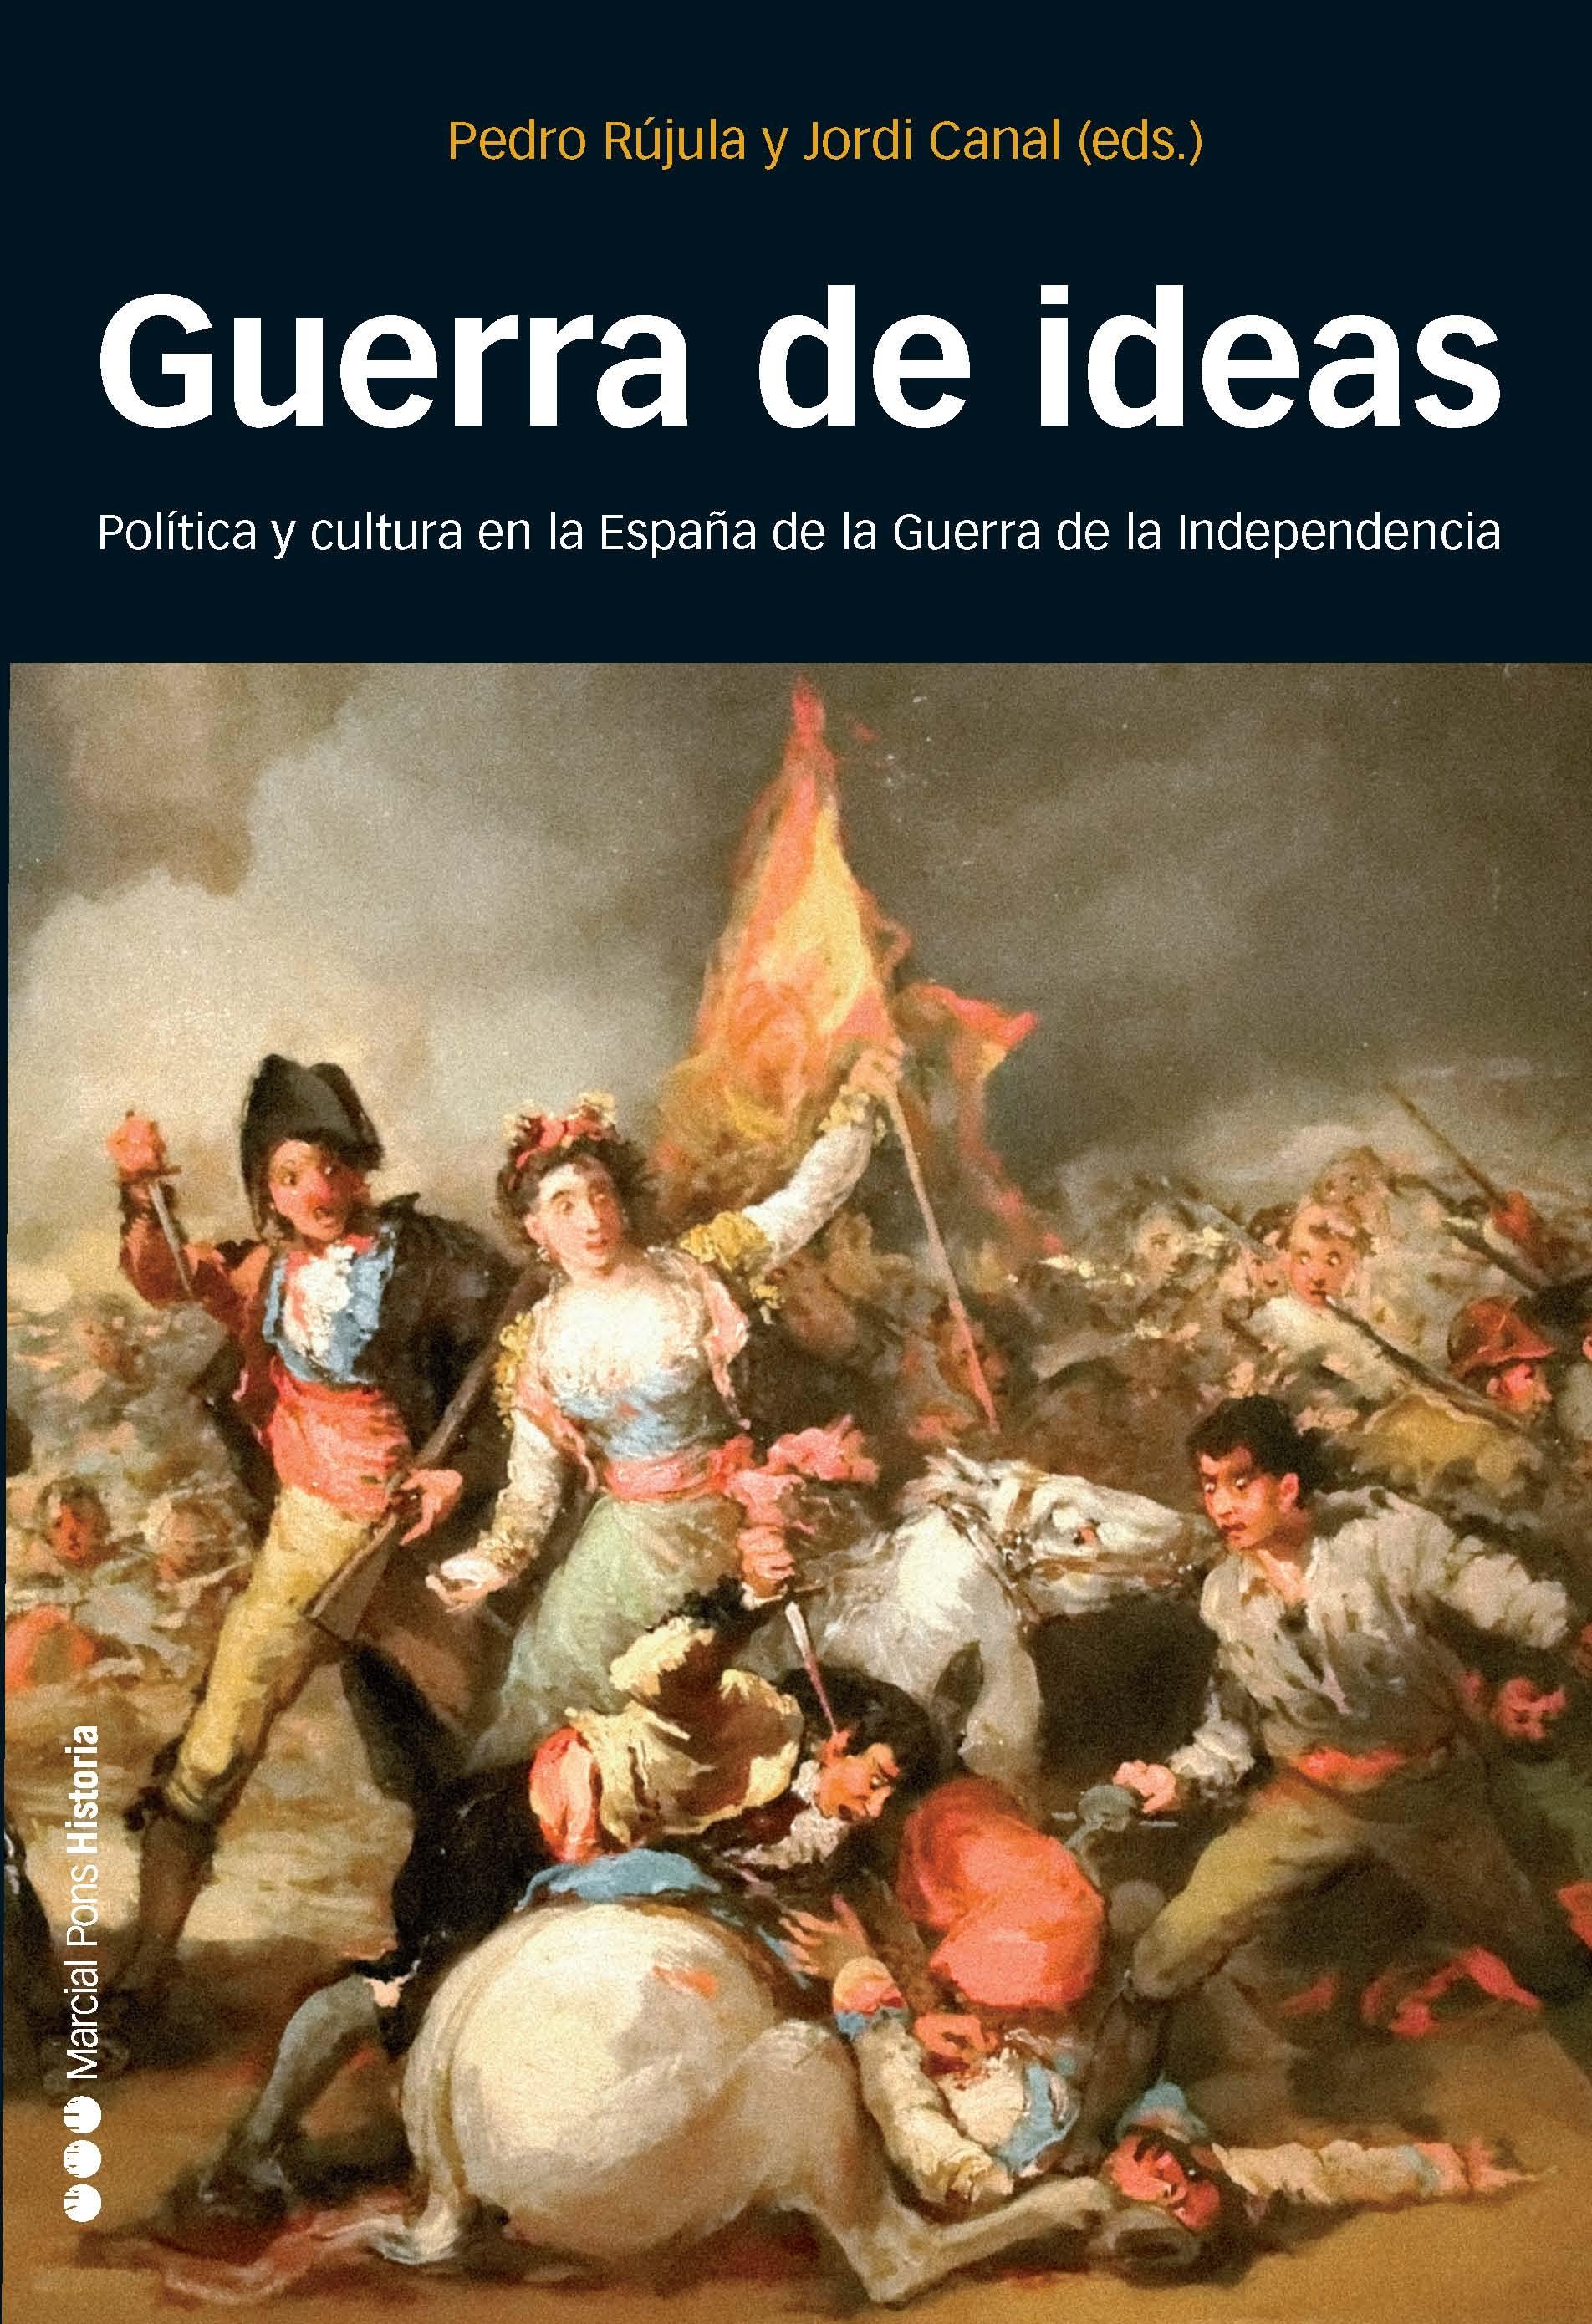 Guerra de ideas "Política y cultura en la España de la Guerra de la Independencia"